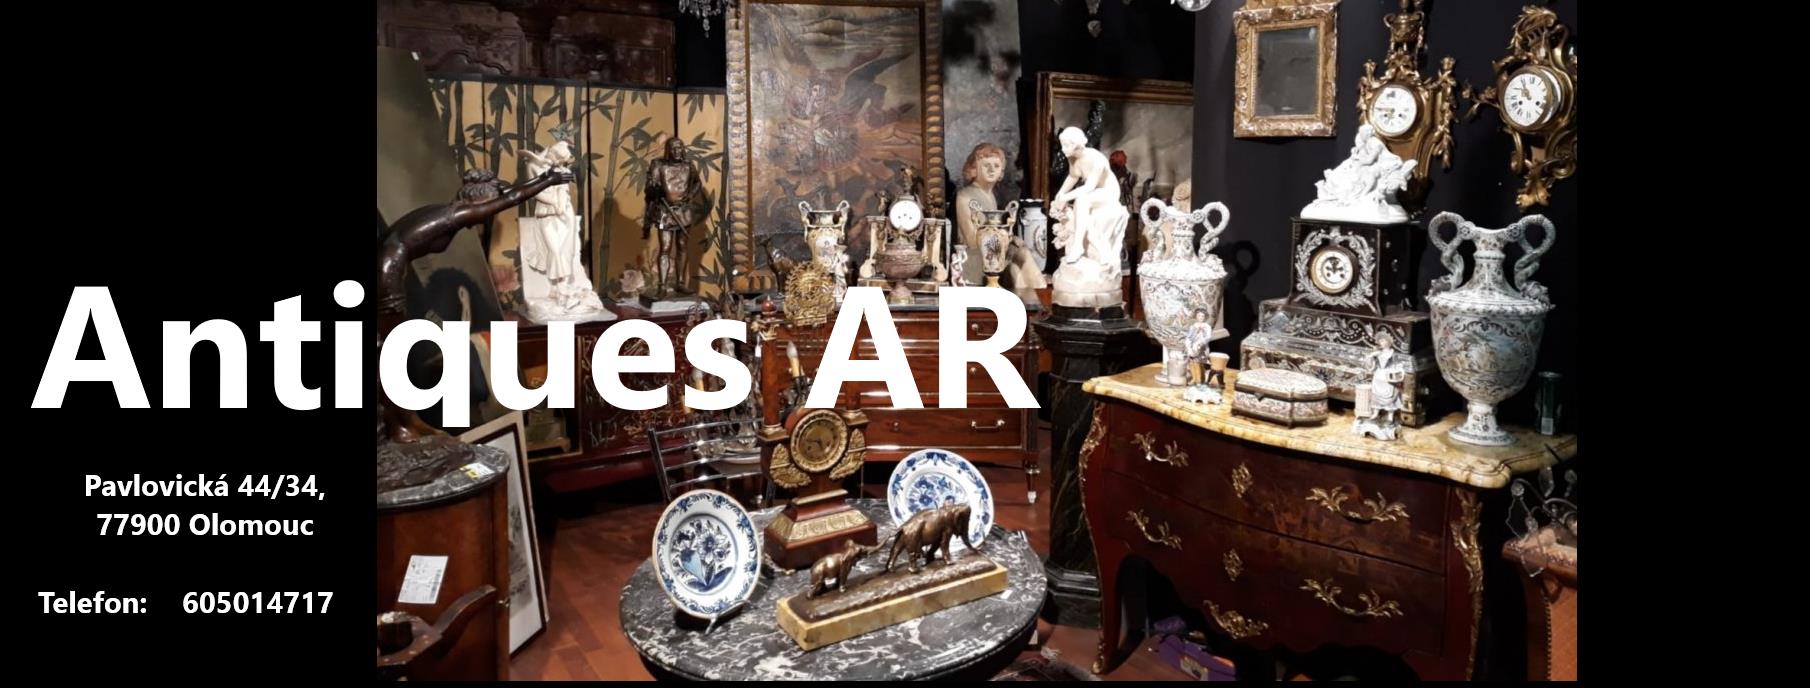 Starožitnosti antiques AR  